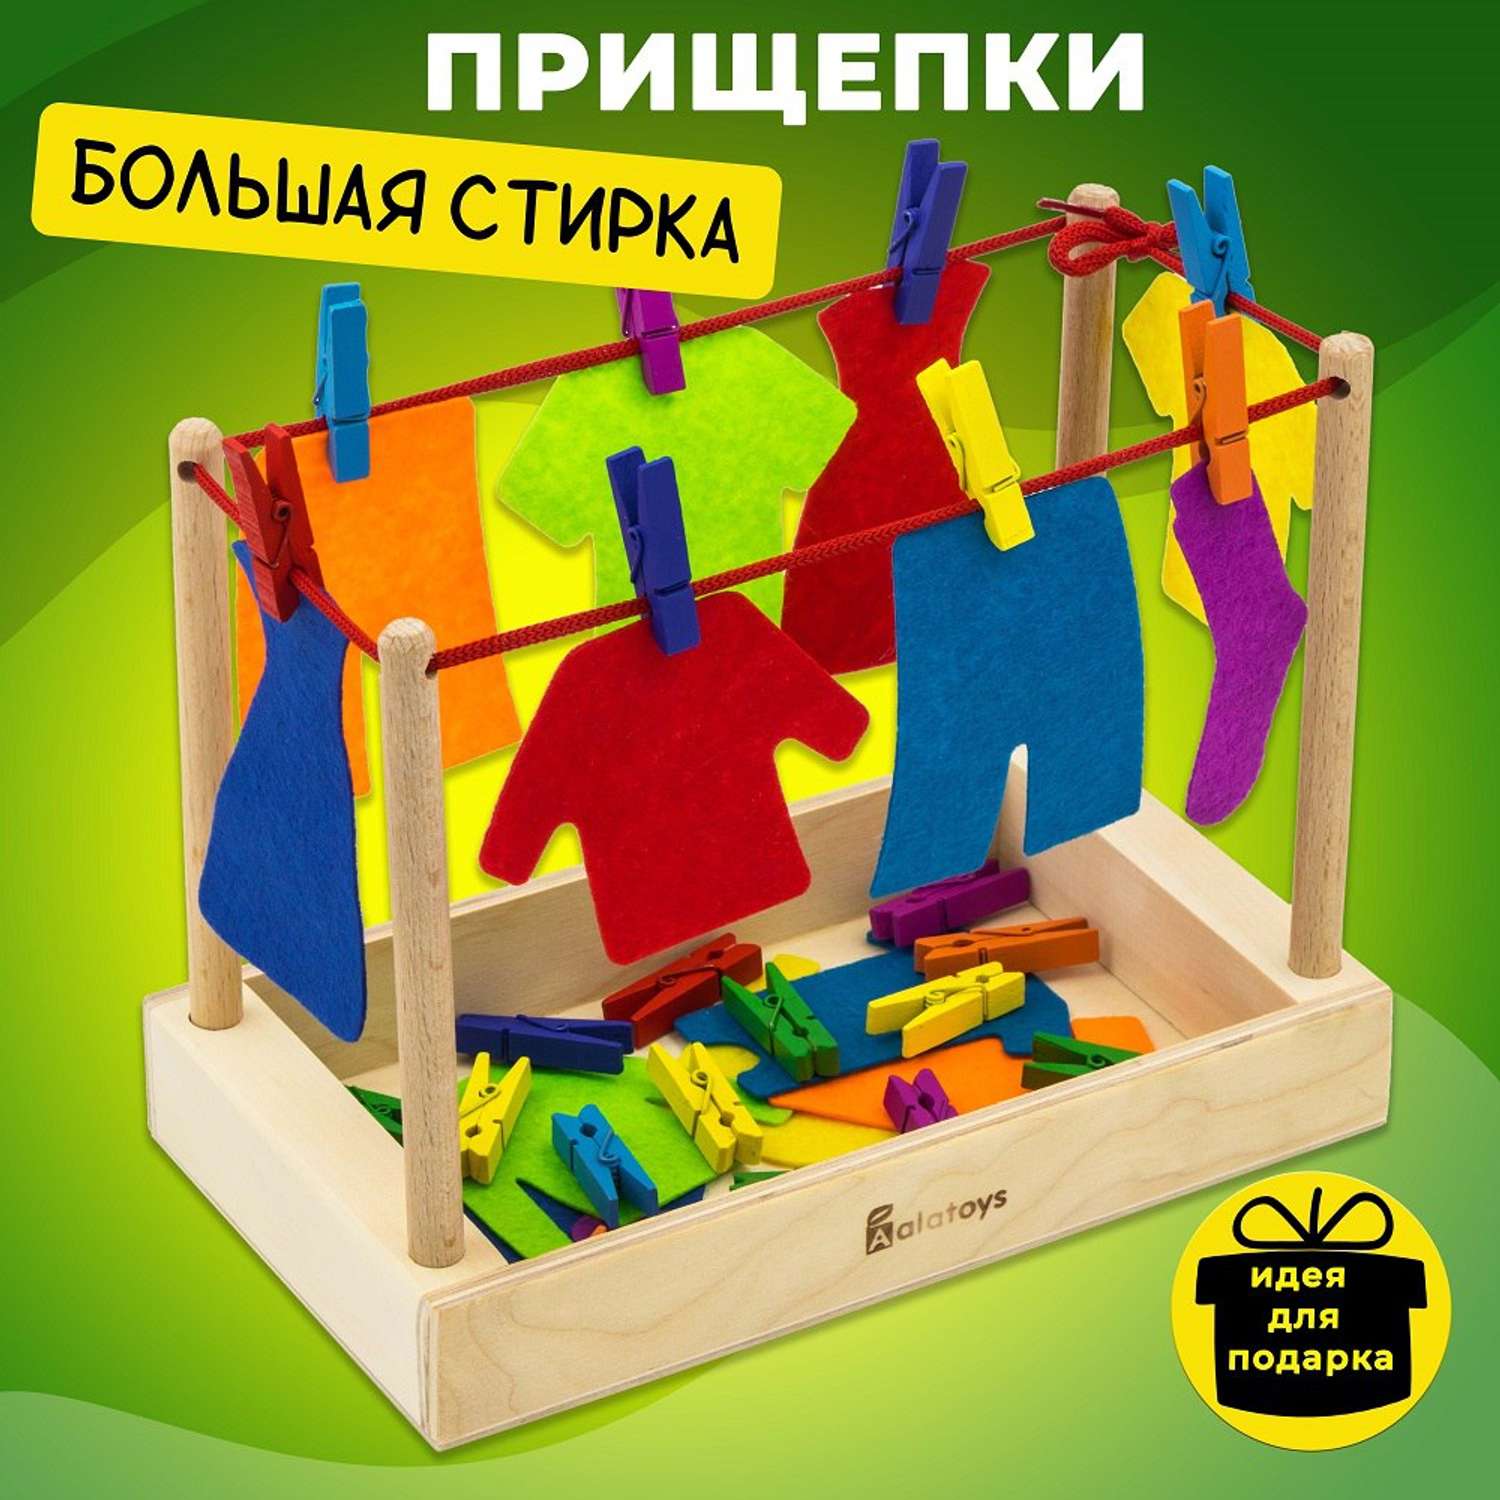 Развивающая игрушка Сибирские Игрушки Игры с прищепками Веселый огород 114202